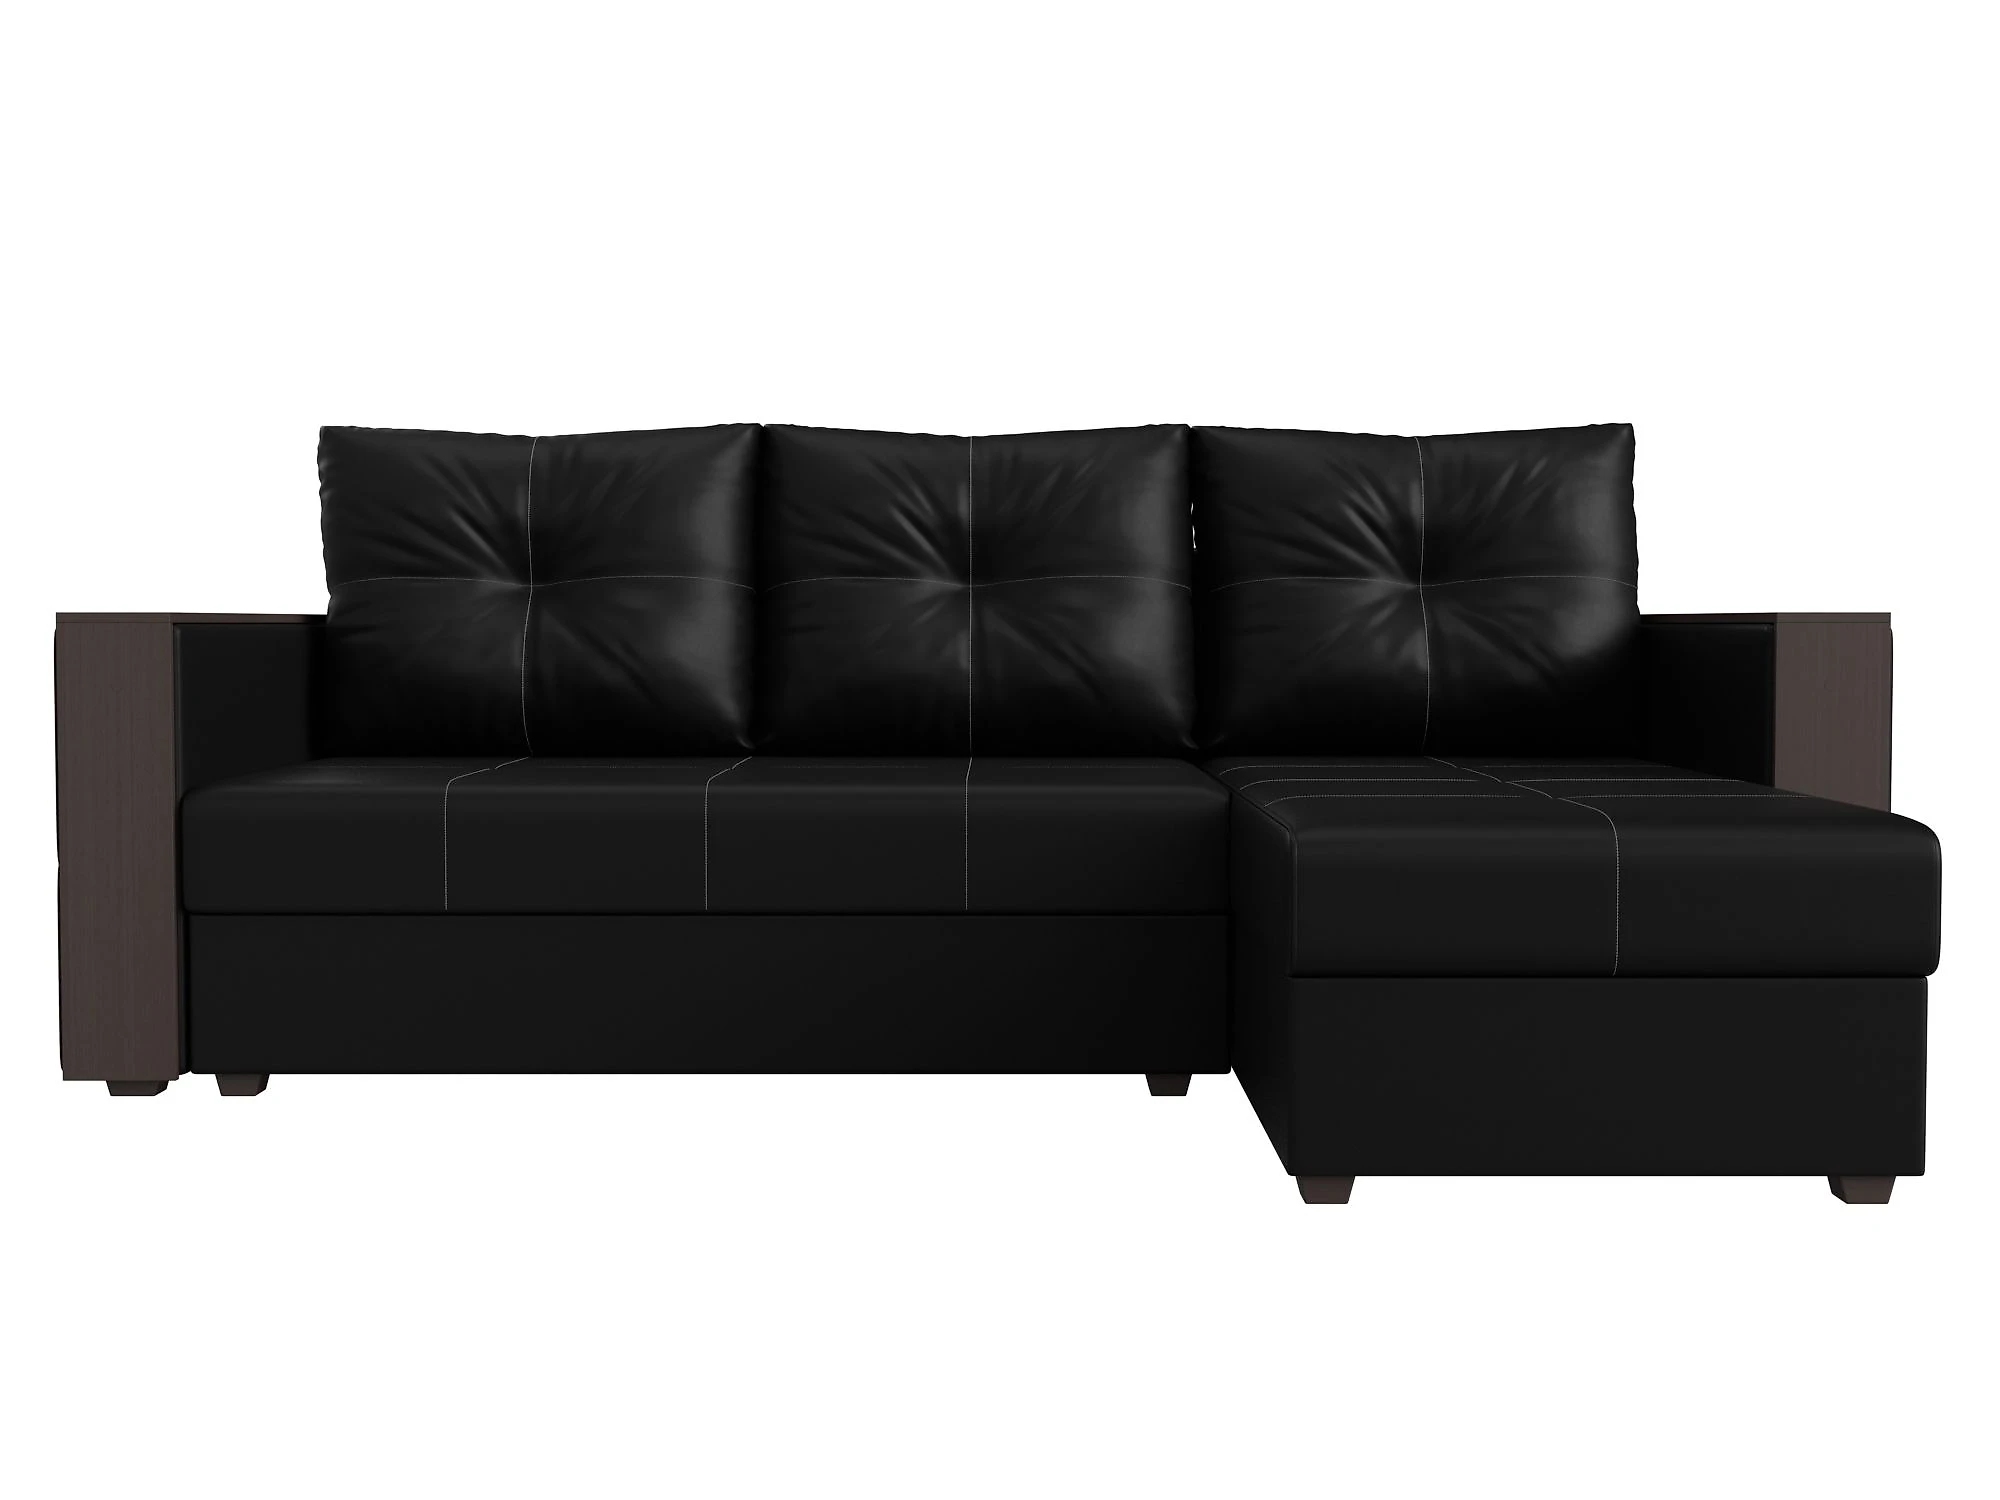 Односпальный угловой диван Валенсия Лайт Дизайн 15